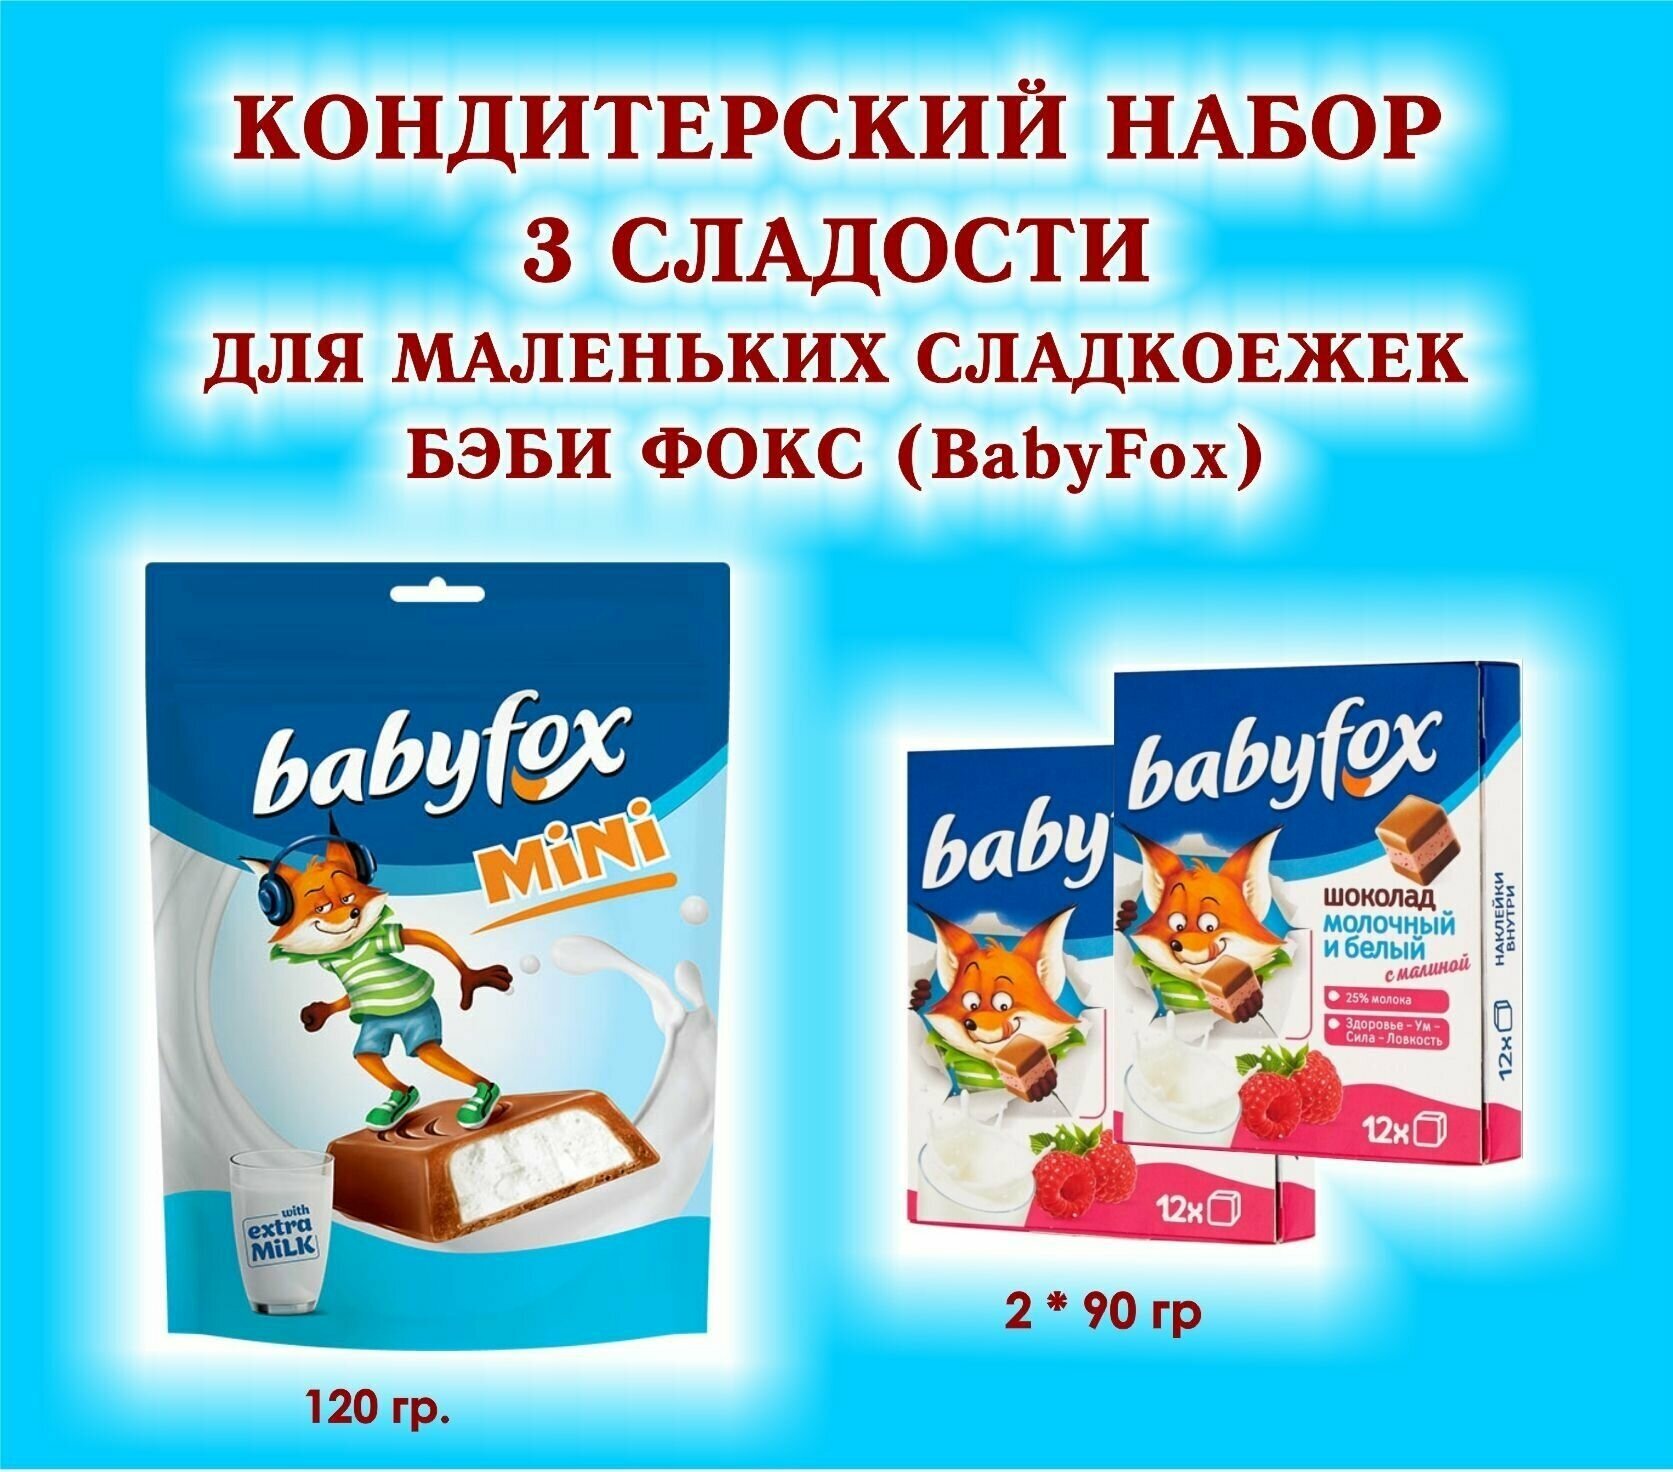 Набор сладостей "BabyFox"-Шоколад молочный с малиной 2*90 гр.+Конфеты шоколадные с молочной начинкой 1*120 гр.-подарок для маленьких сладкоежек